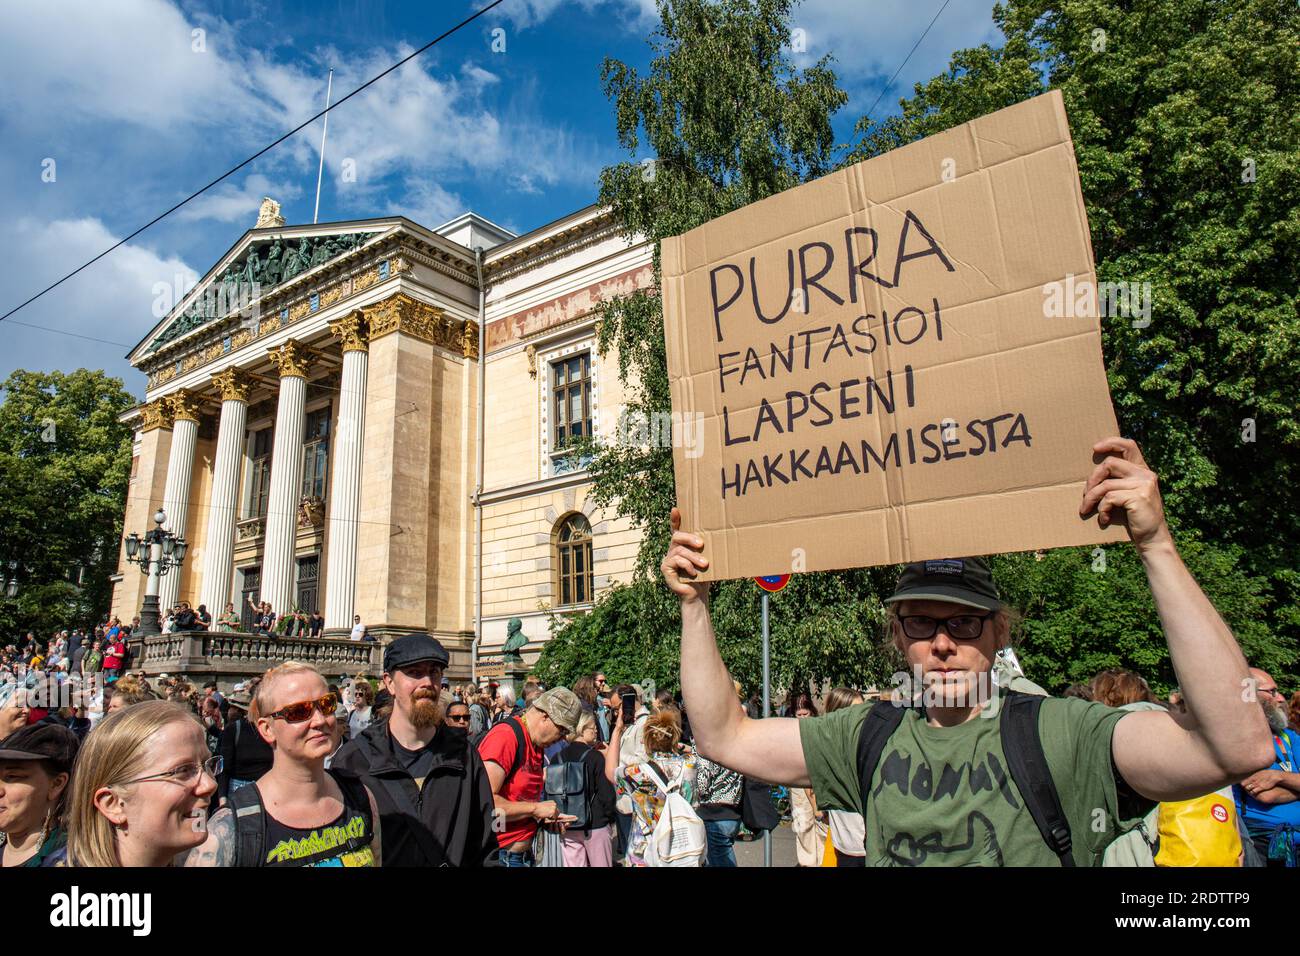 Purra fantasioi lapseni hakkaamisesta. Uomo in possesso di un cartello di cartone durante una manifestazione contro i ministri di estrema destra di Säätytalo a Helsinki, Finlandia. Foto Stock